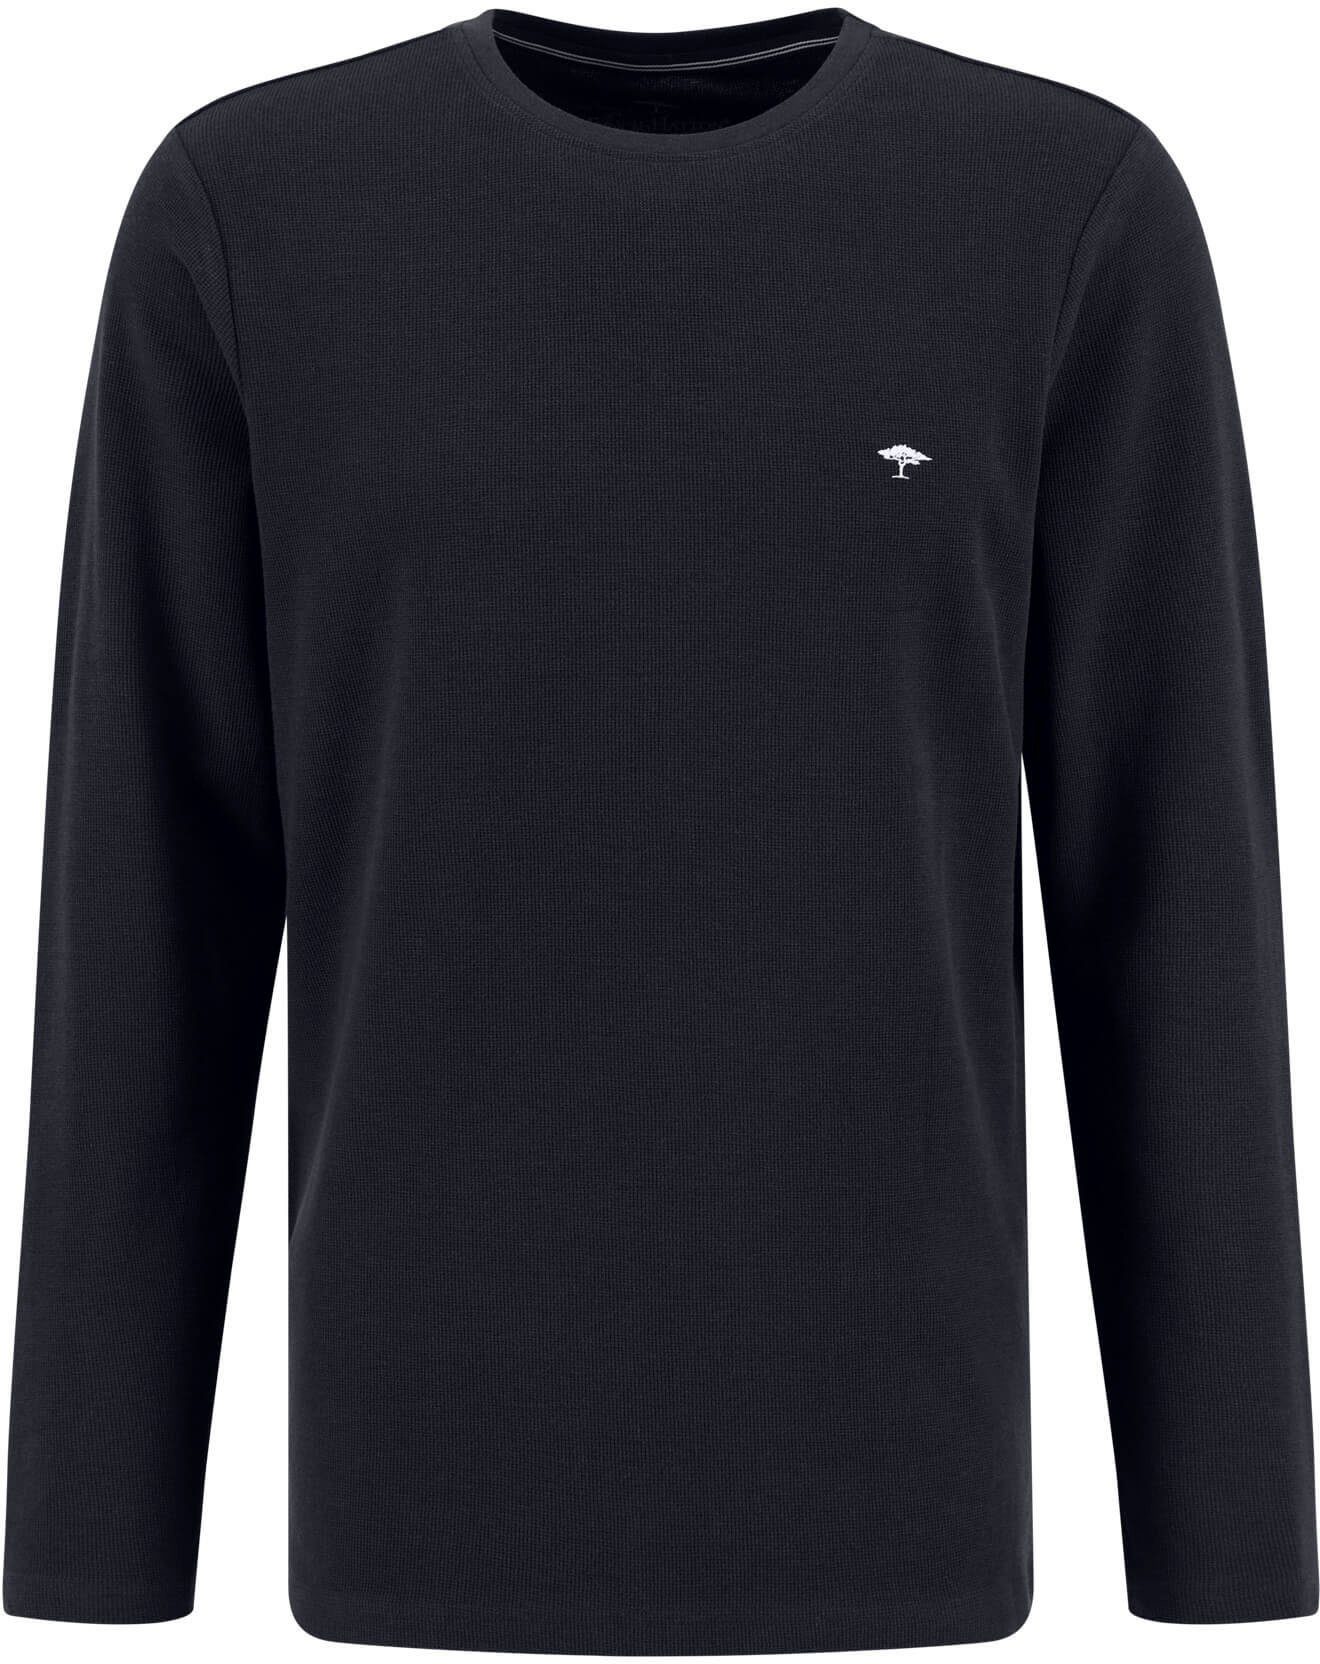 Fynch-Hatton T-Shirts online kaufen | OTTO | Blusen